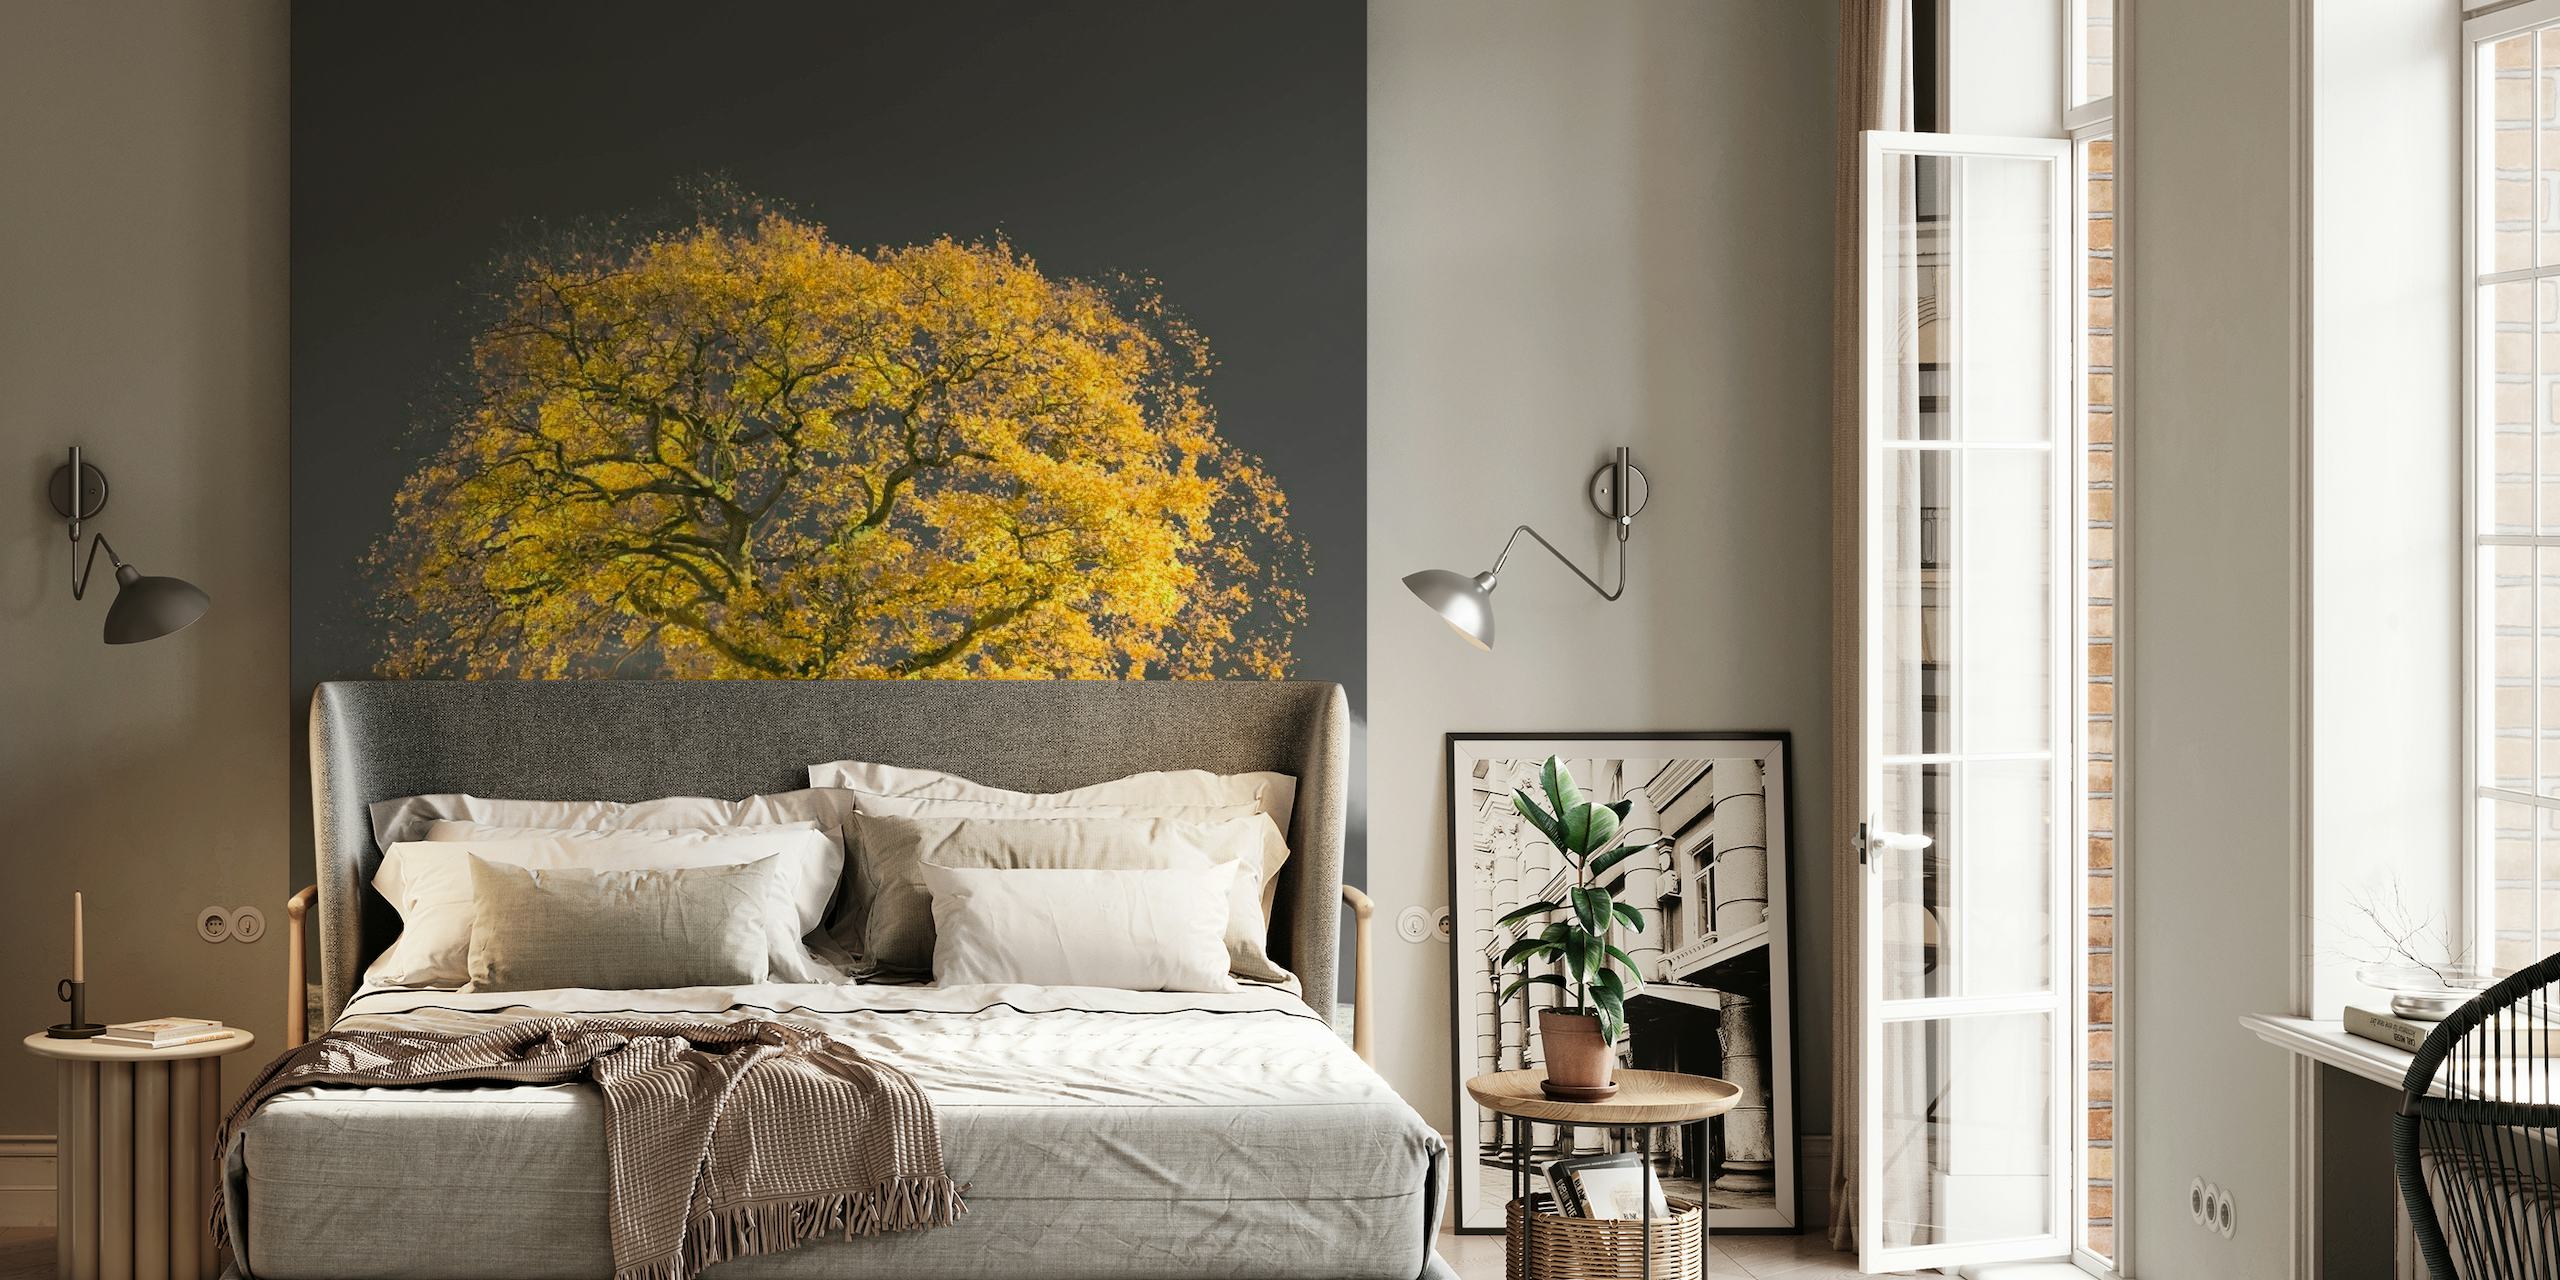 Uma majestosa árvore dourada contra um fotomural vinílico de paisagem em preto e branco